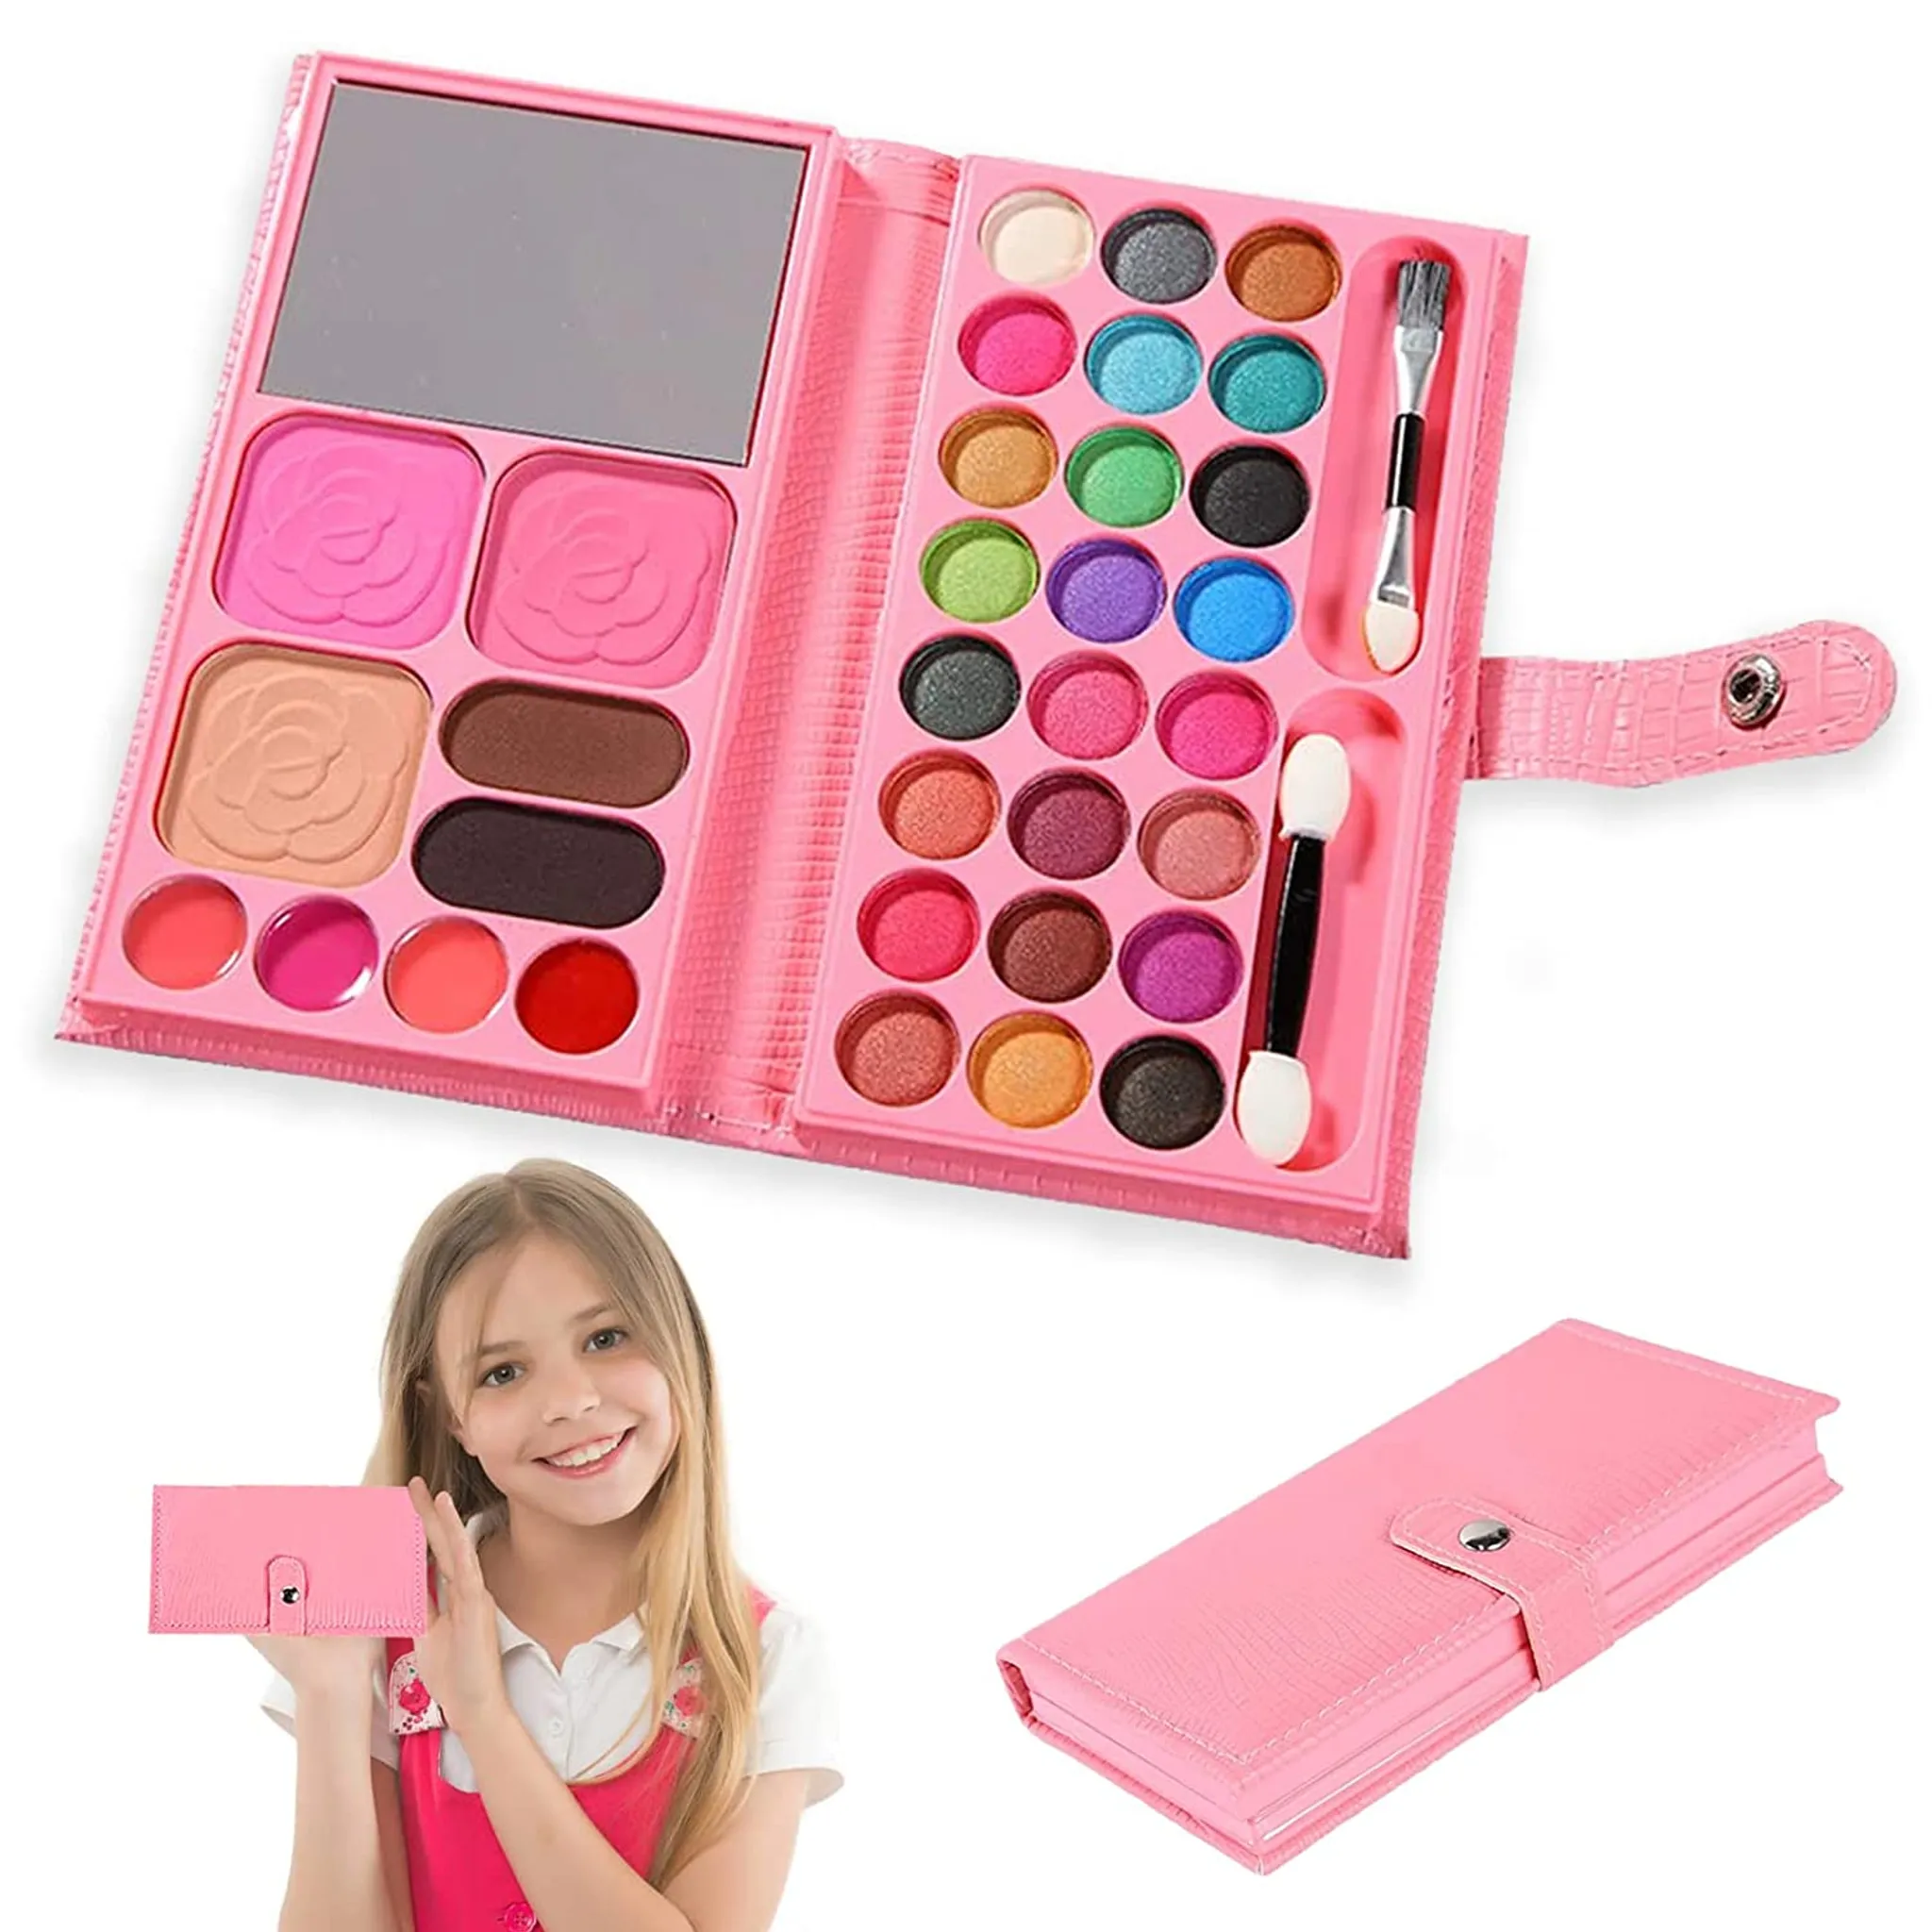 Kinderschminke- Koffer Set Mädchen, Make Up, 59 PCS, für mädchen 4 - 10  jahre